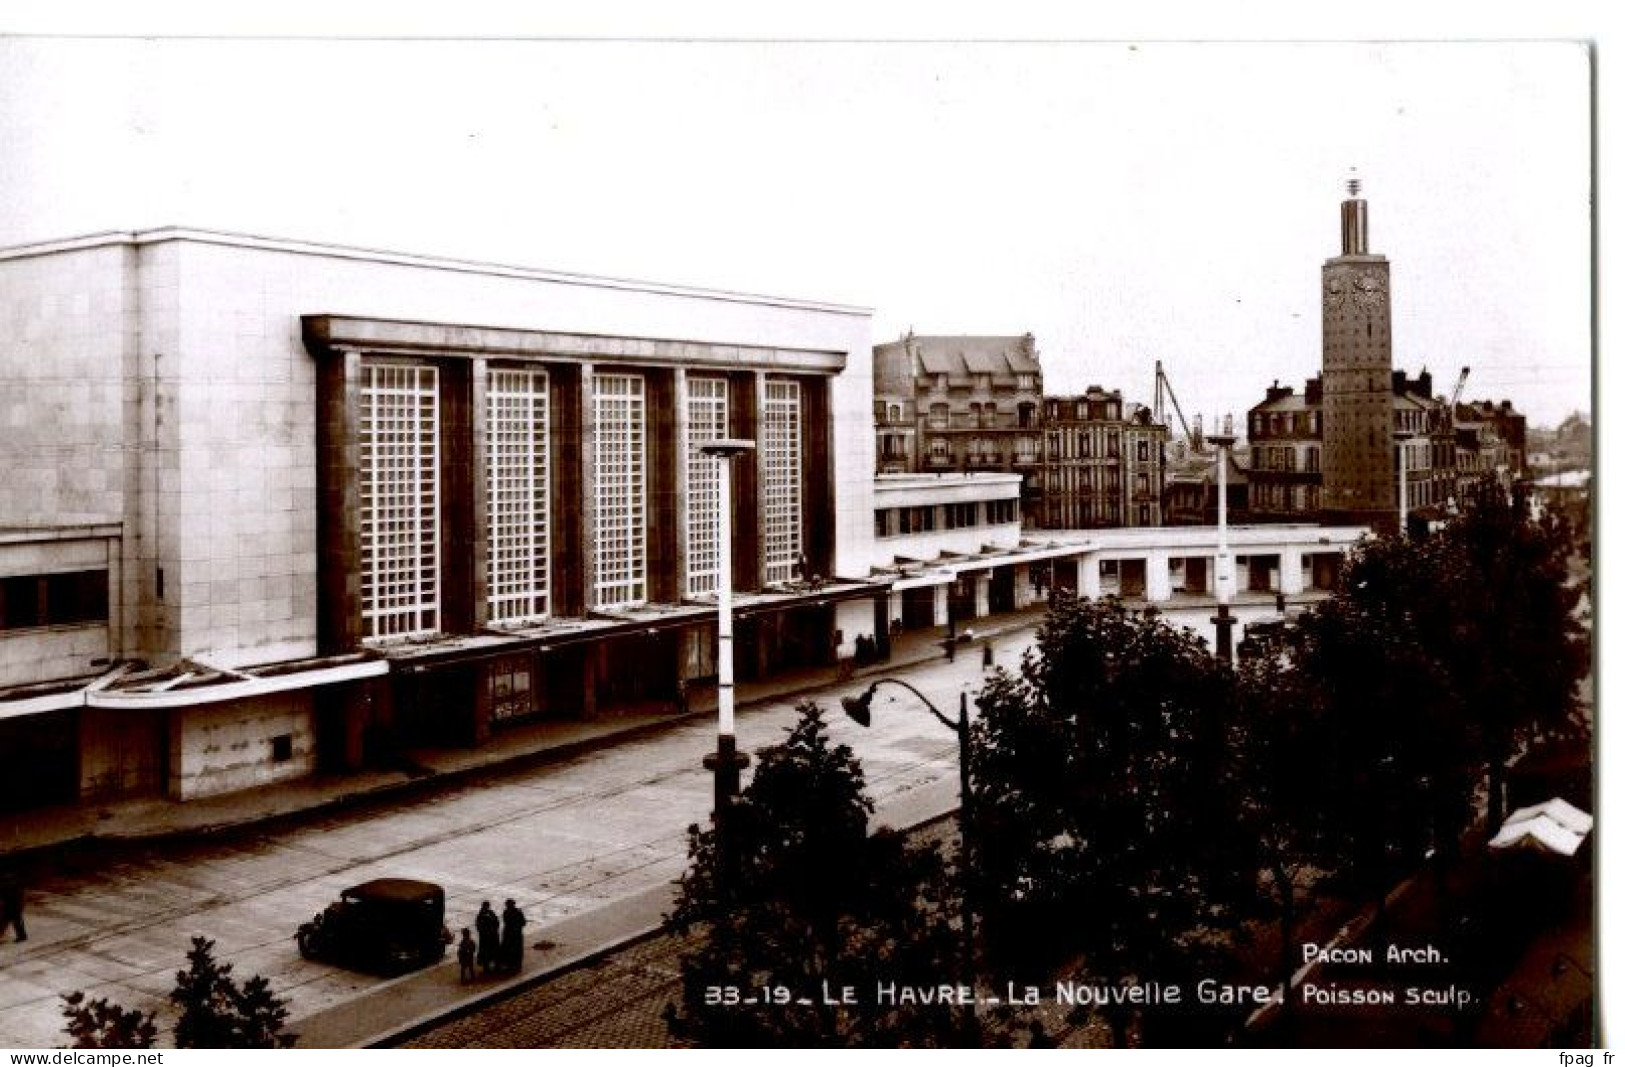 Le Havre (76 - Seine Maritime) - 33 - 19 - La Nouvelle Gare - Poisson Sculp. - Stazioni